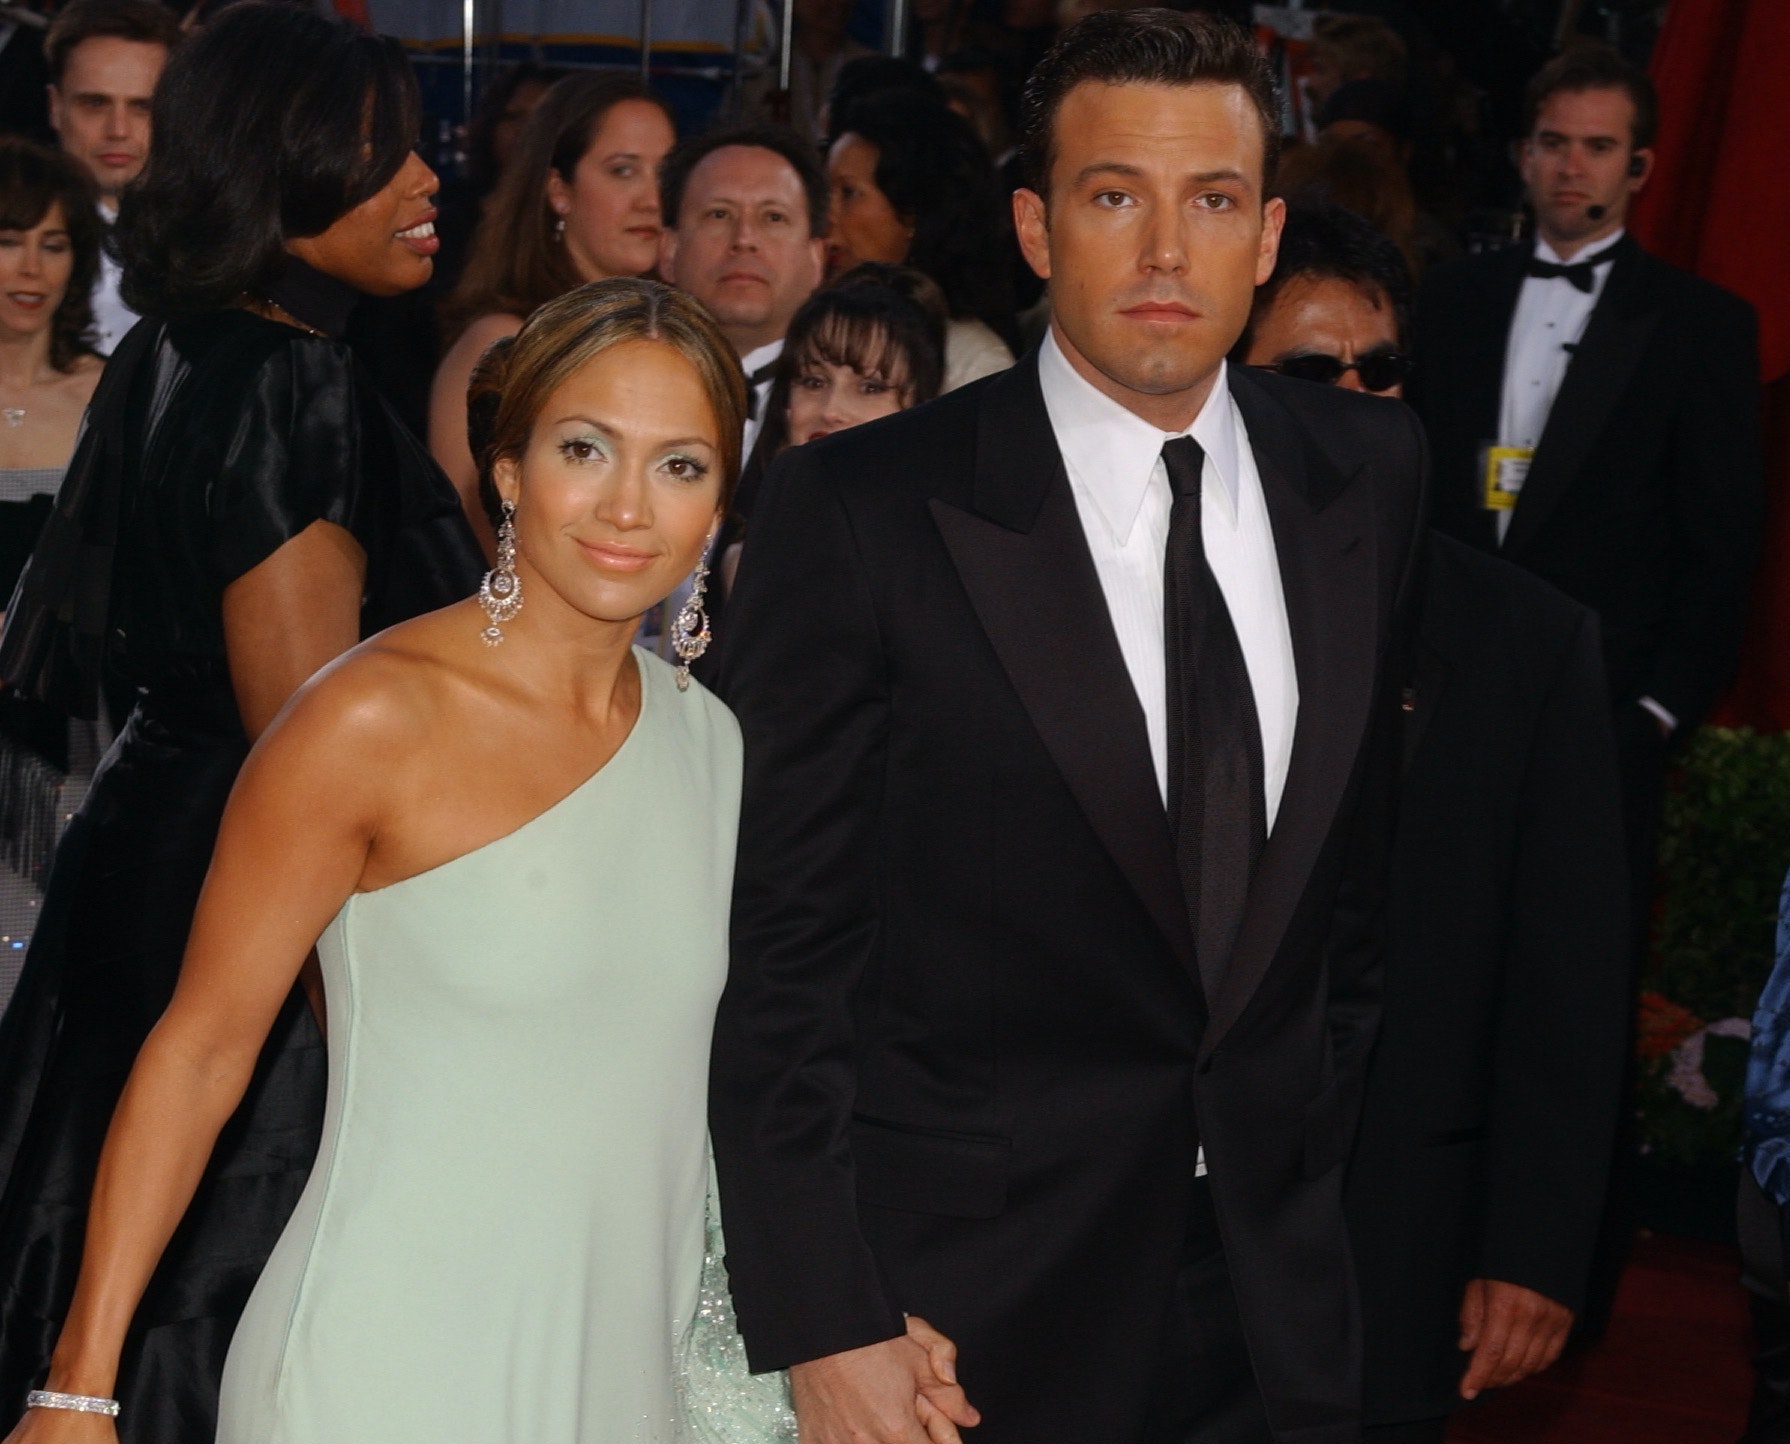 Ben Affleck herinnert zich de 'lelijke, wrede' dingen die tijdens hun relatie over J.Lo werden gezegd